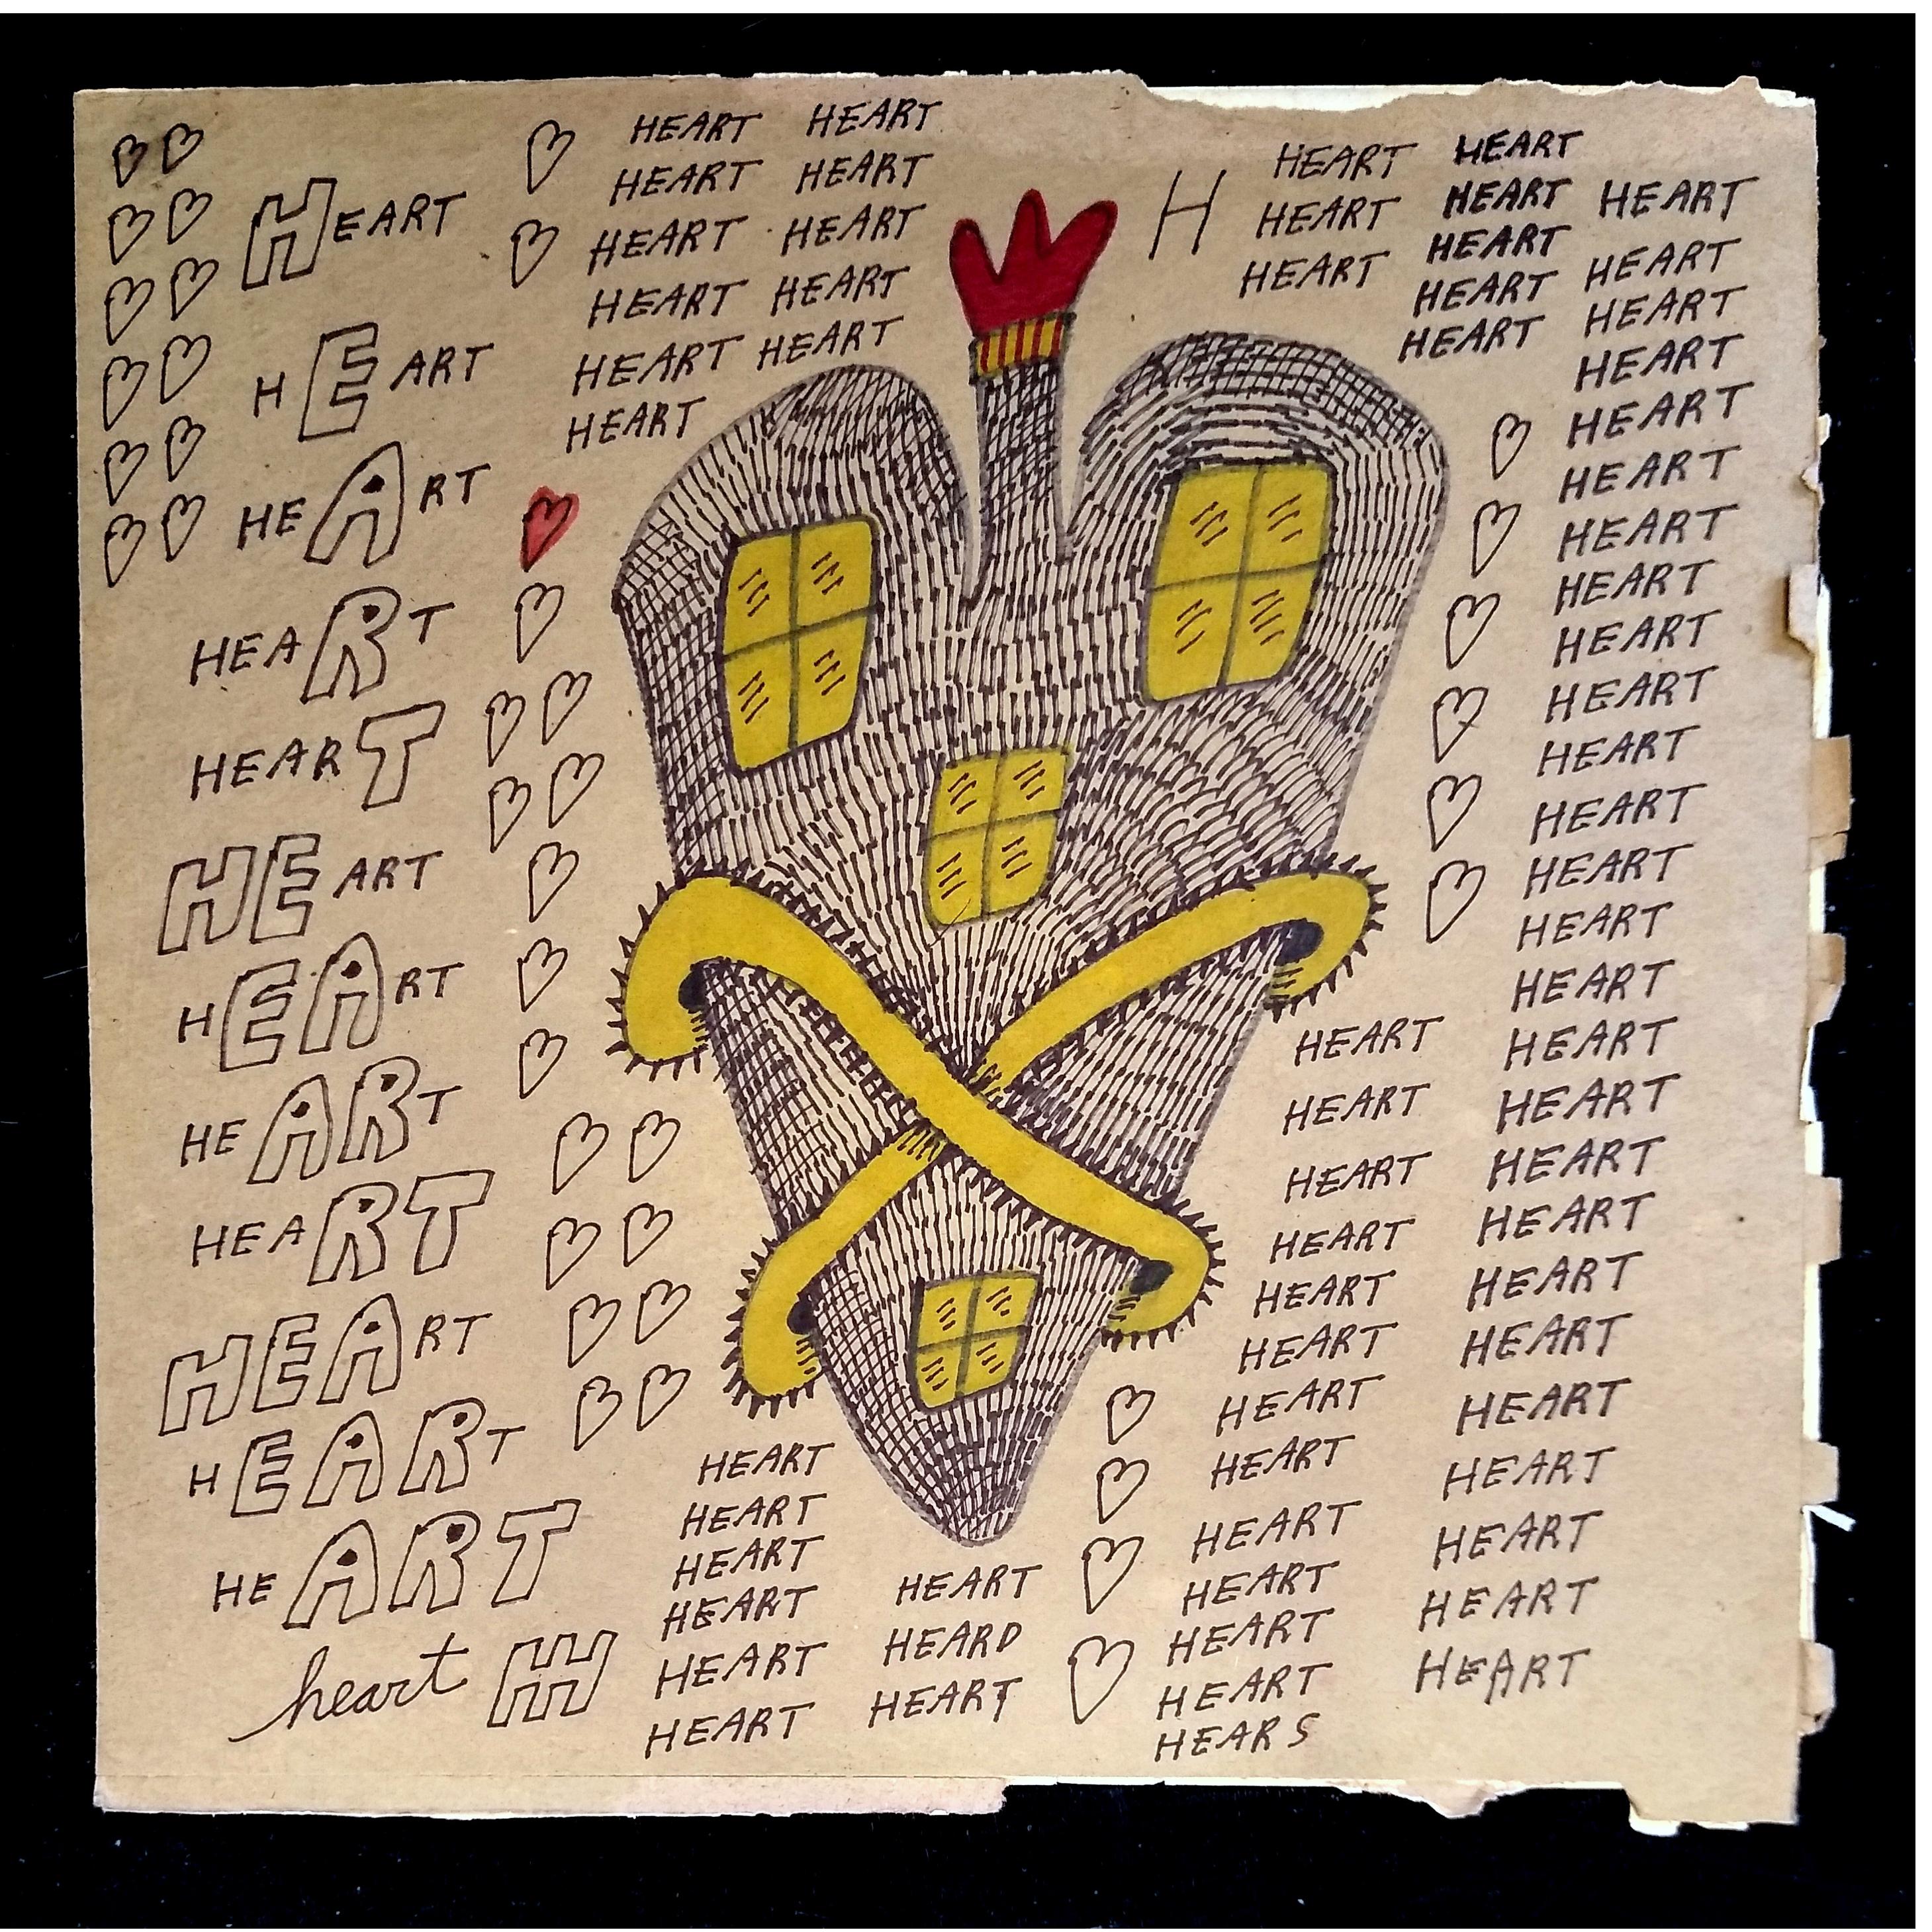 Jon Sarkin - "Heart" - 12.5" x 12.5" - Permanent marker, 2020